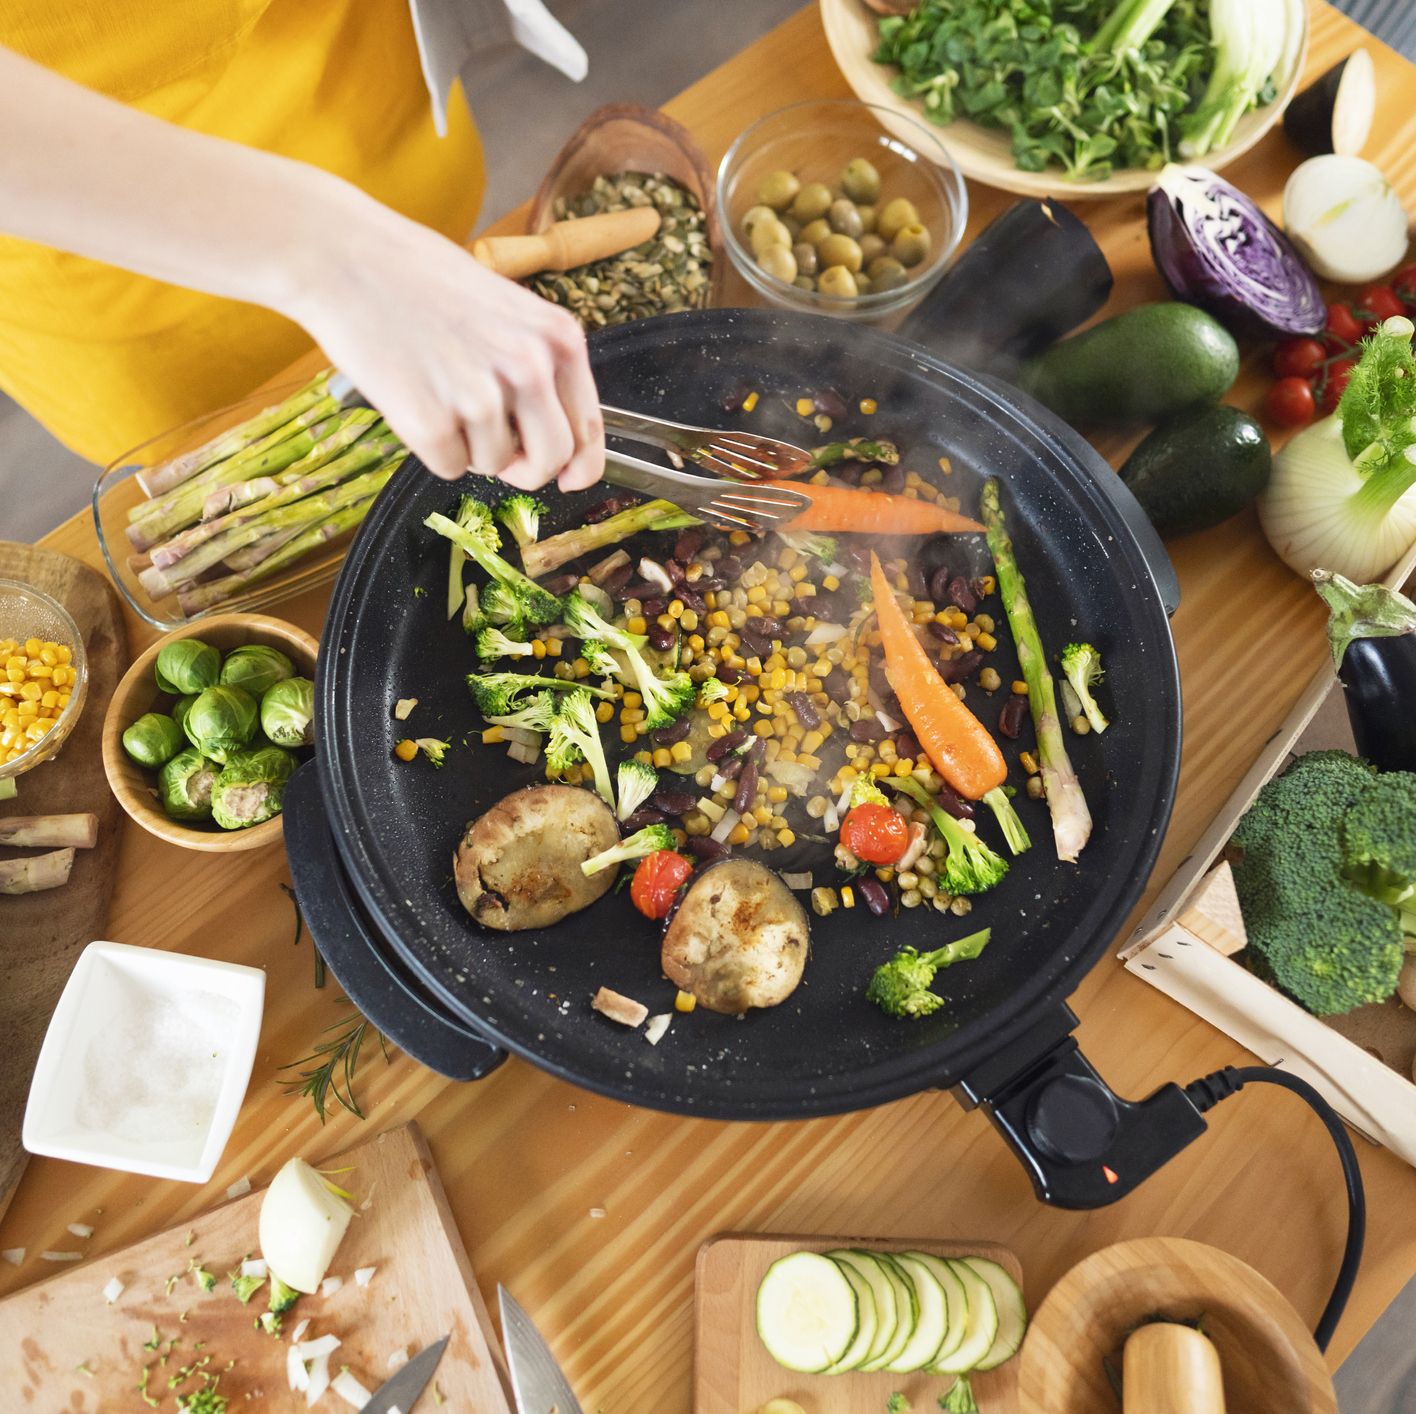 Cocina saludable: 15 utensilios y accesorios para cocinar más sano